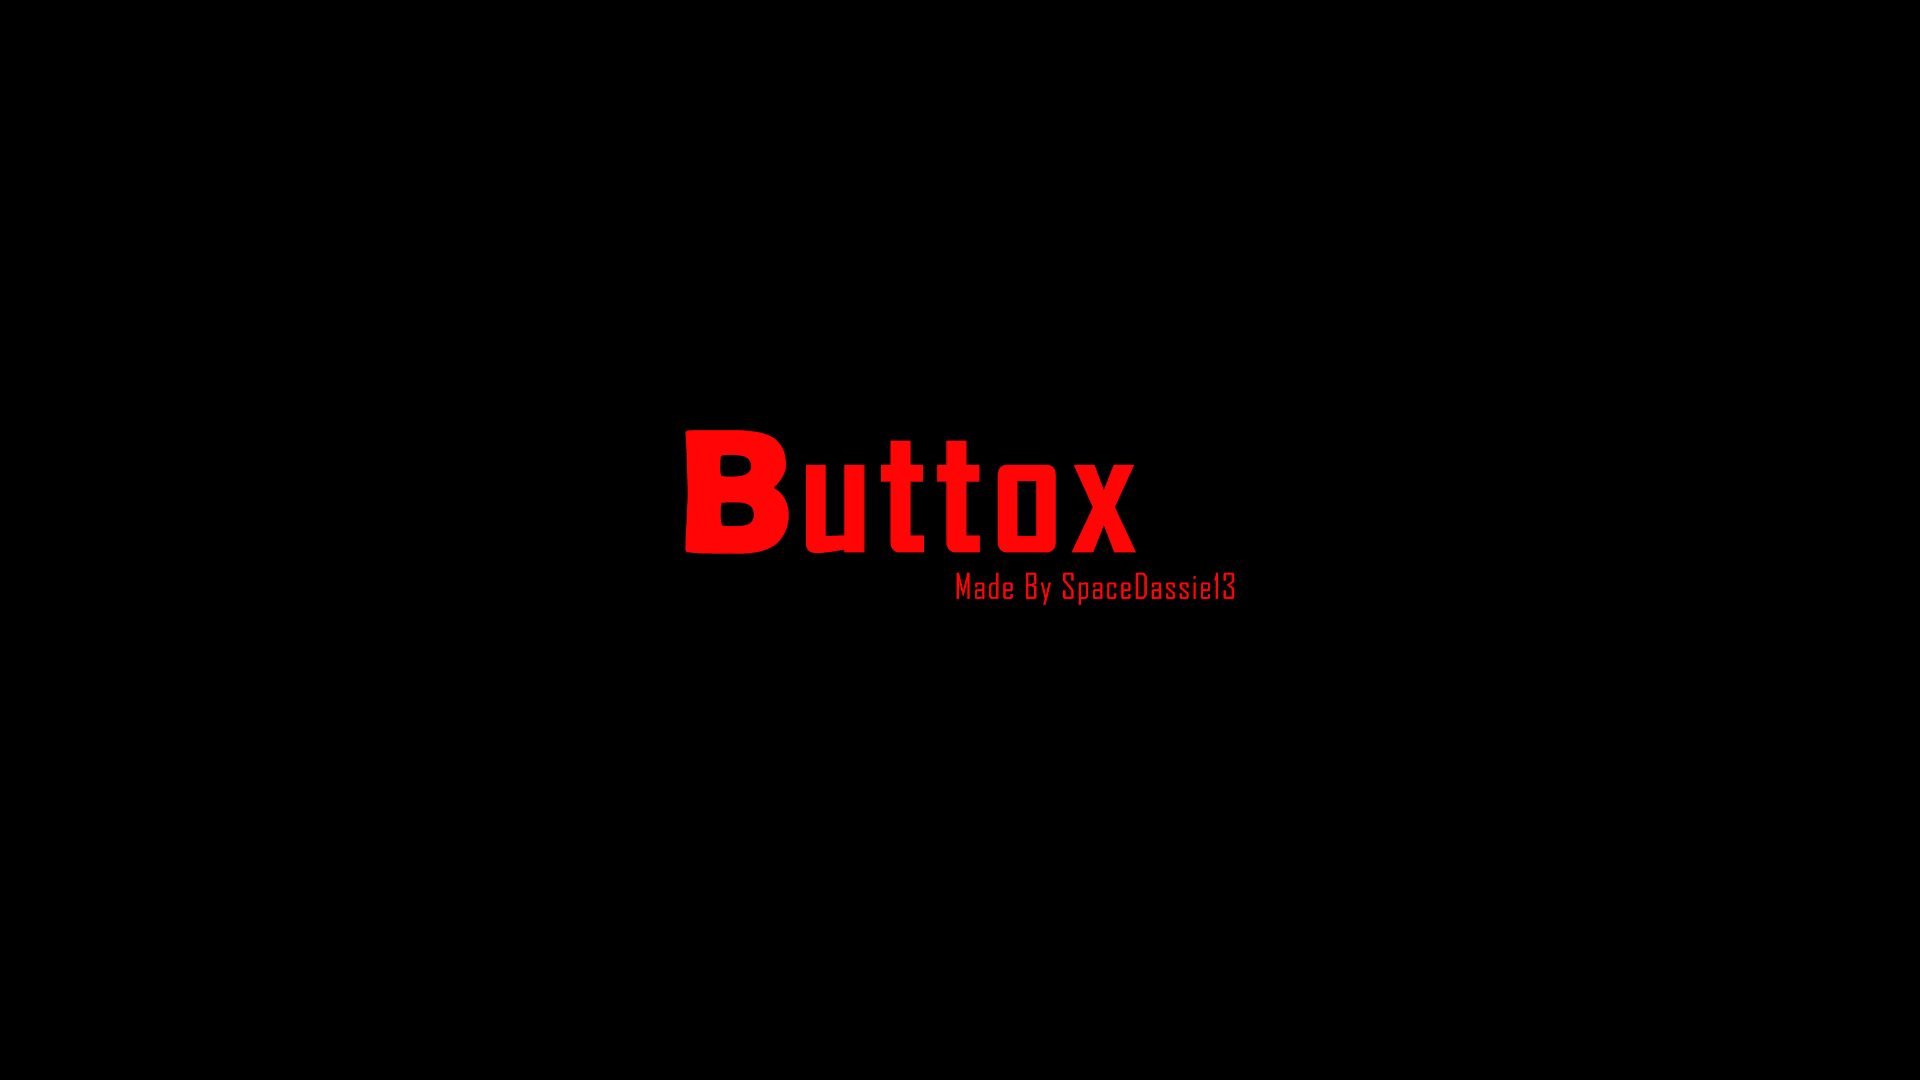 Buttox